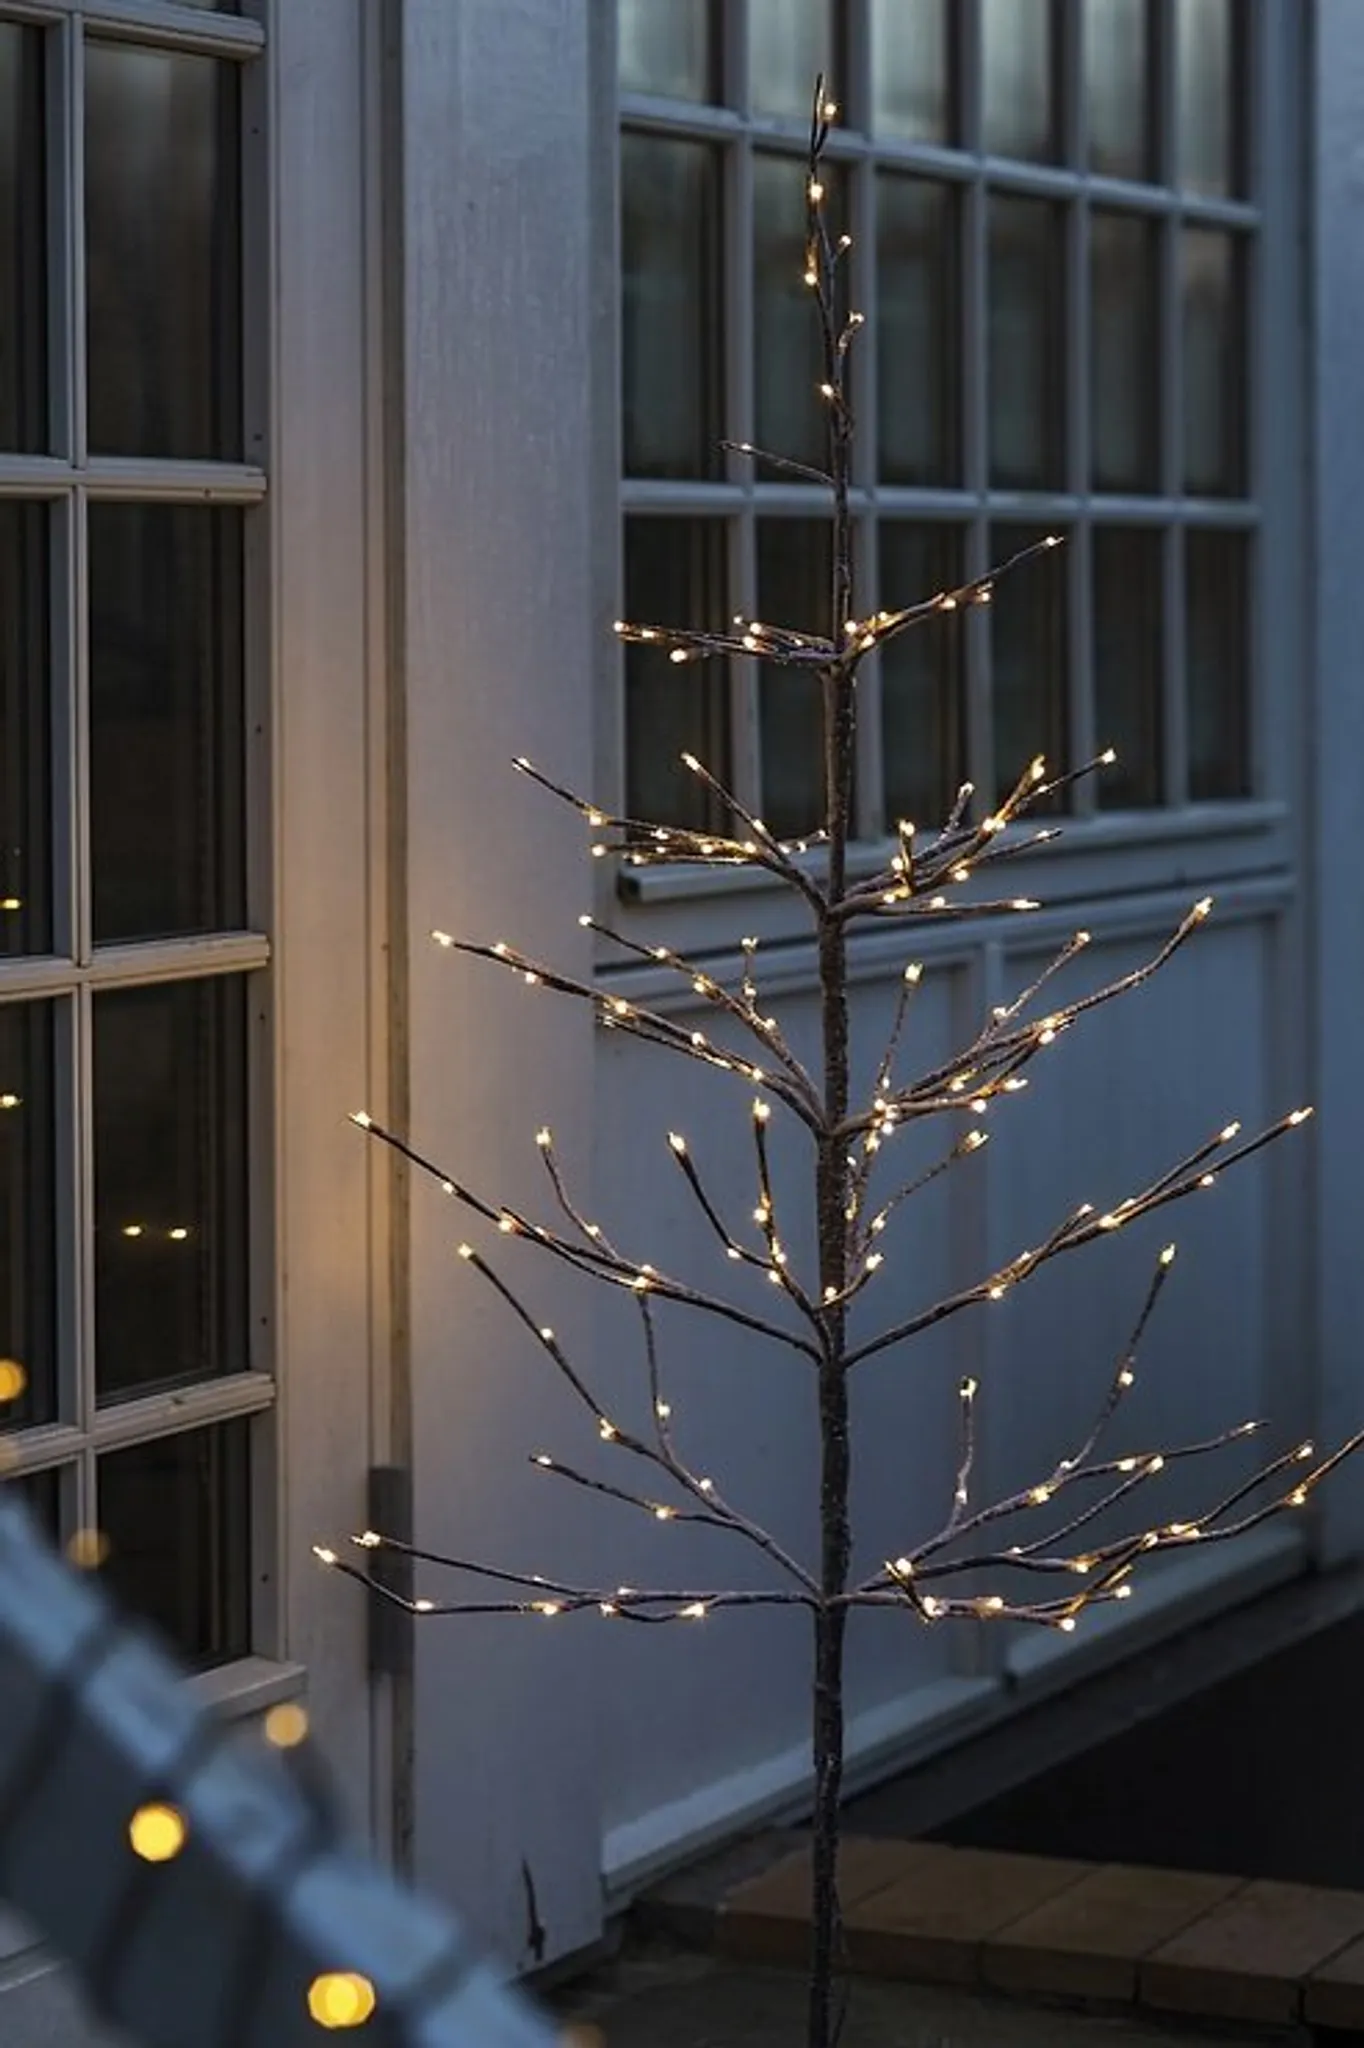 Sirius LED Baum Isaac Tree 110 LED warmweiß 120cm weiß außen kaufen